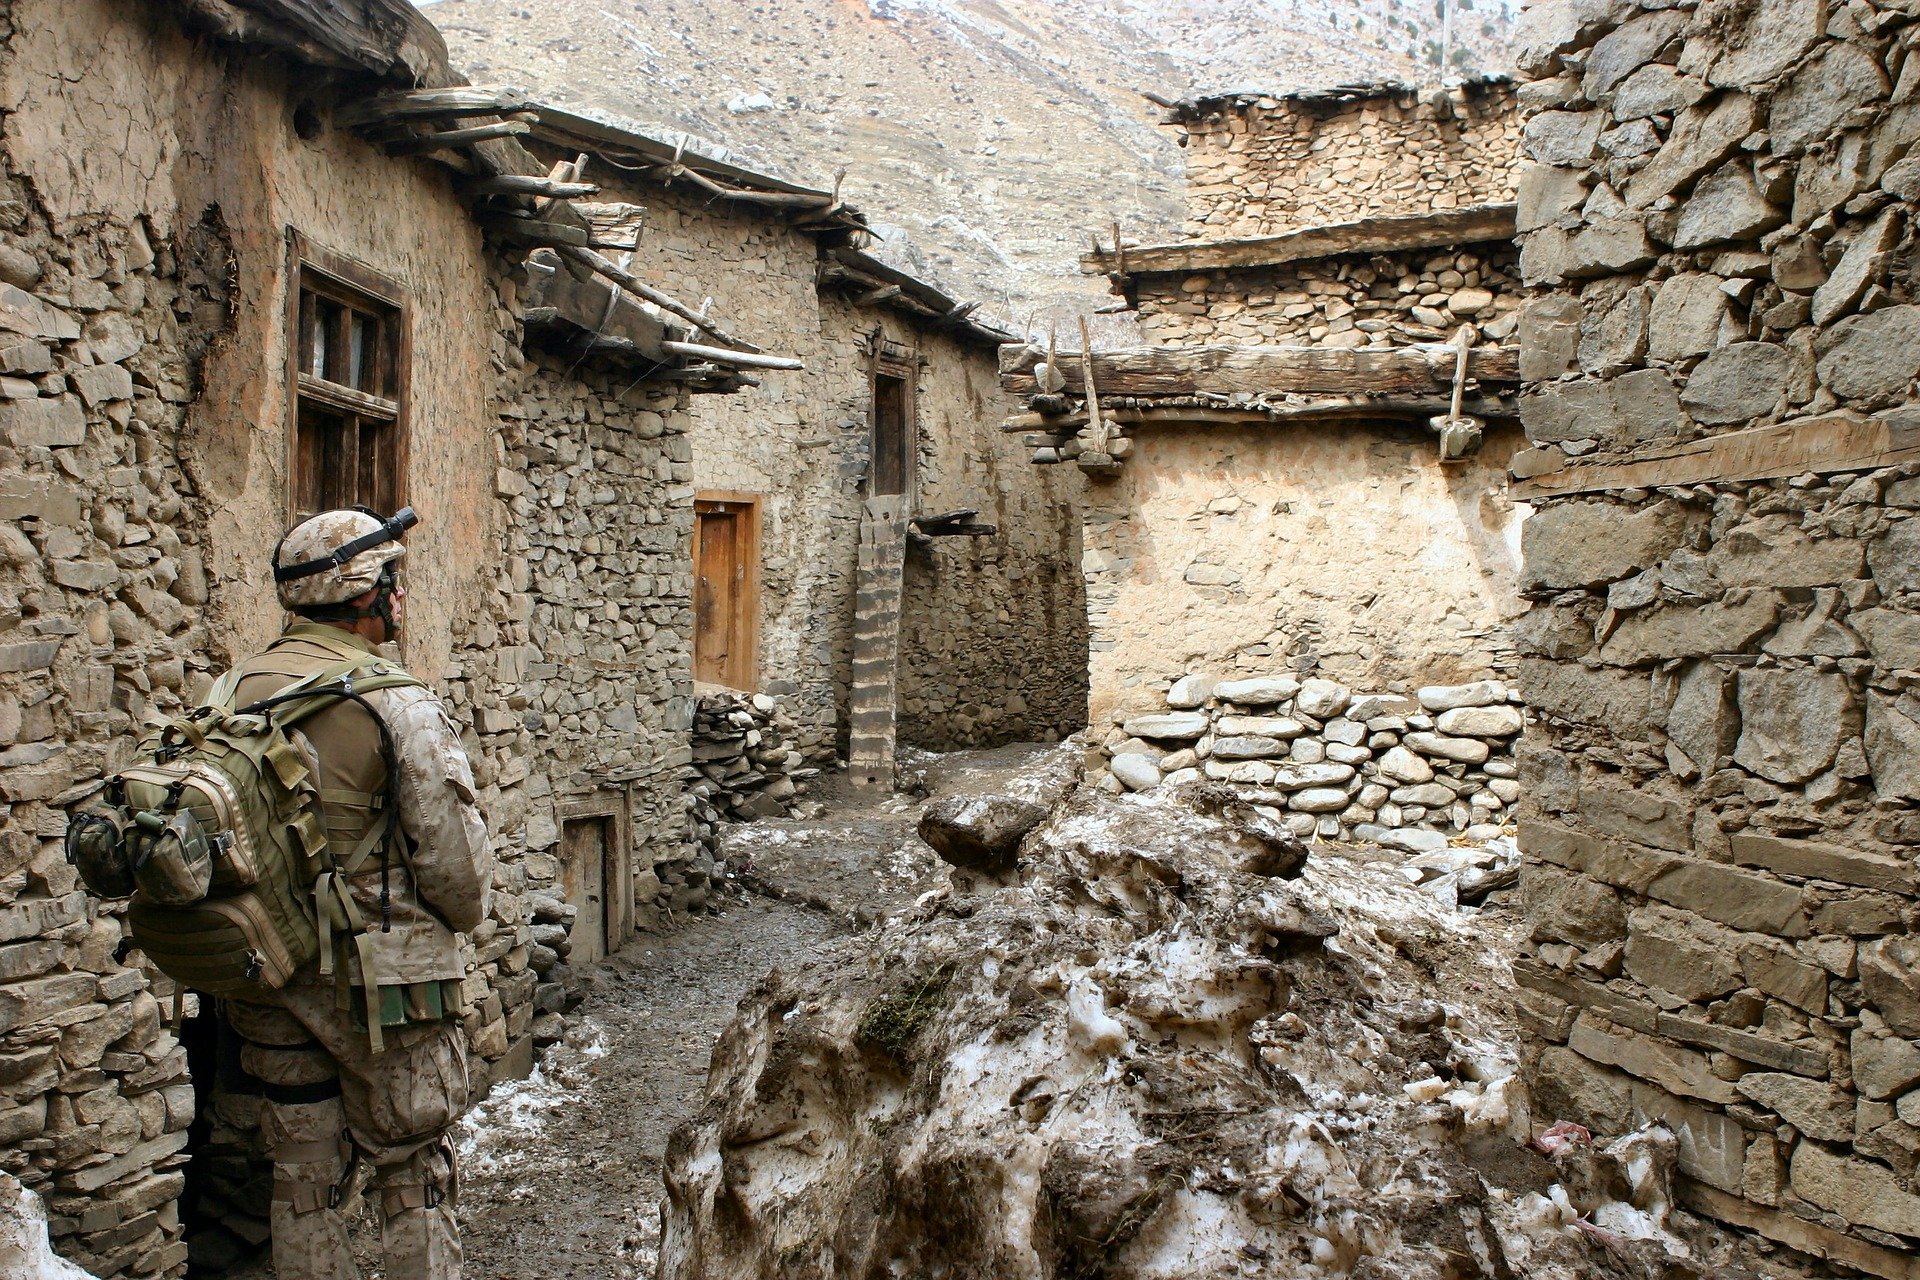 "No sabíamos lo que hacíamos", las mentiras de la guerra en Afganistán